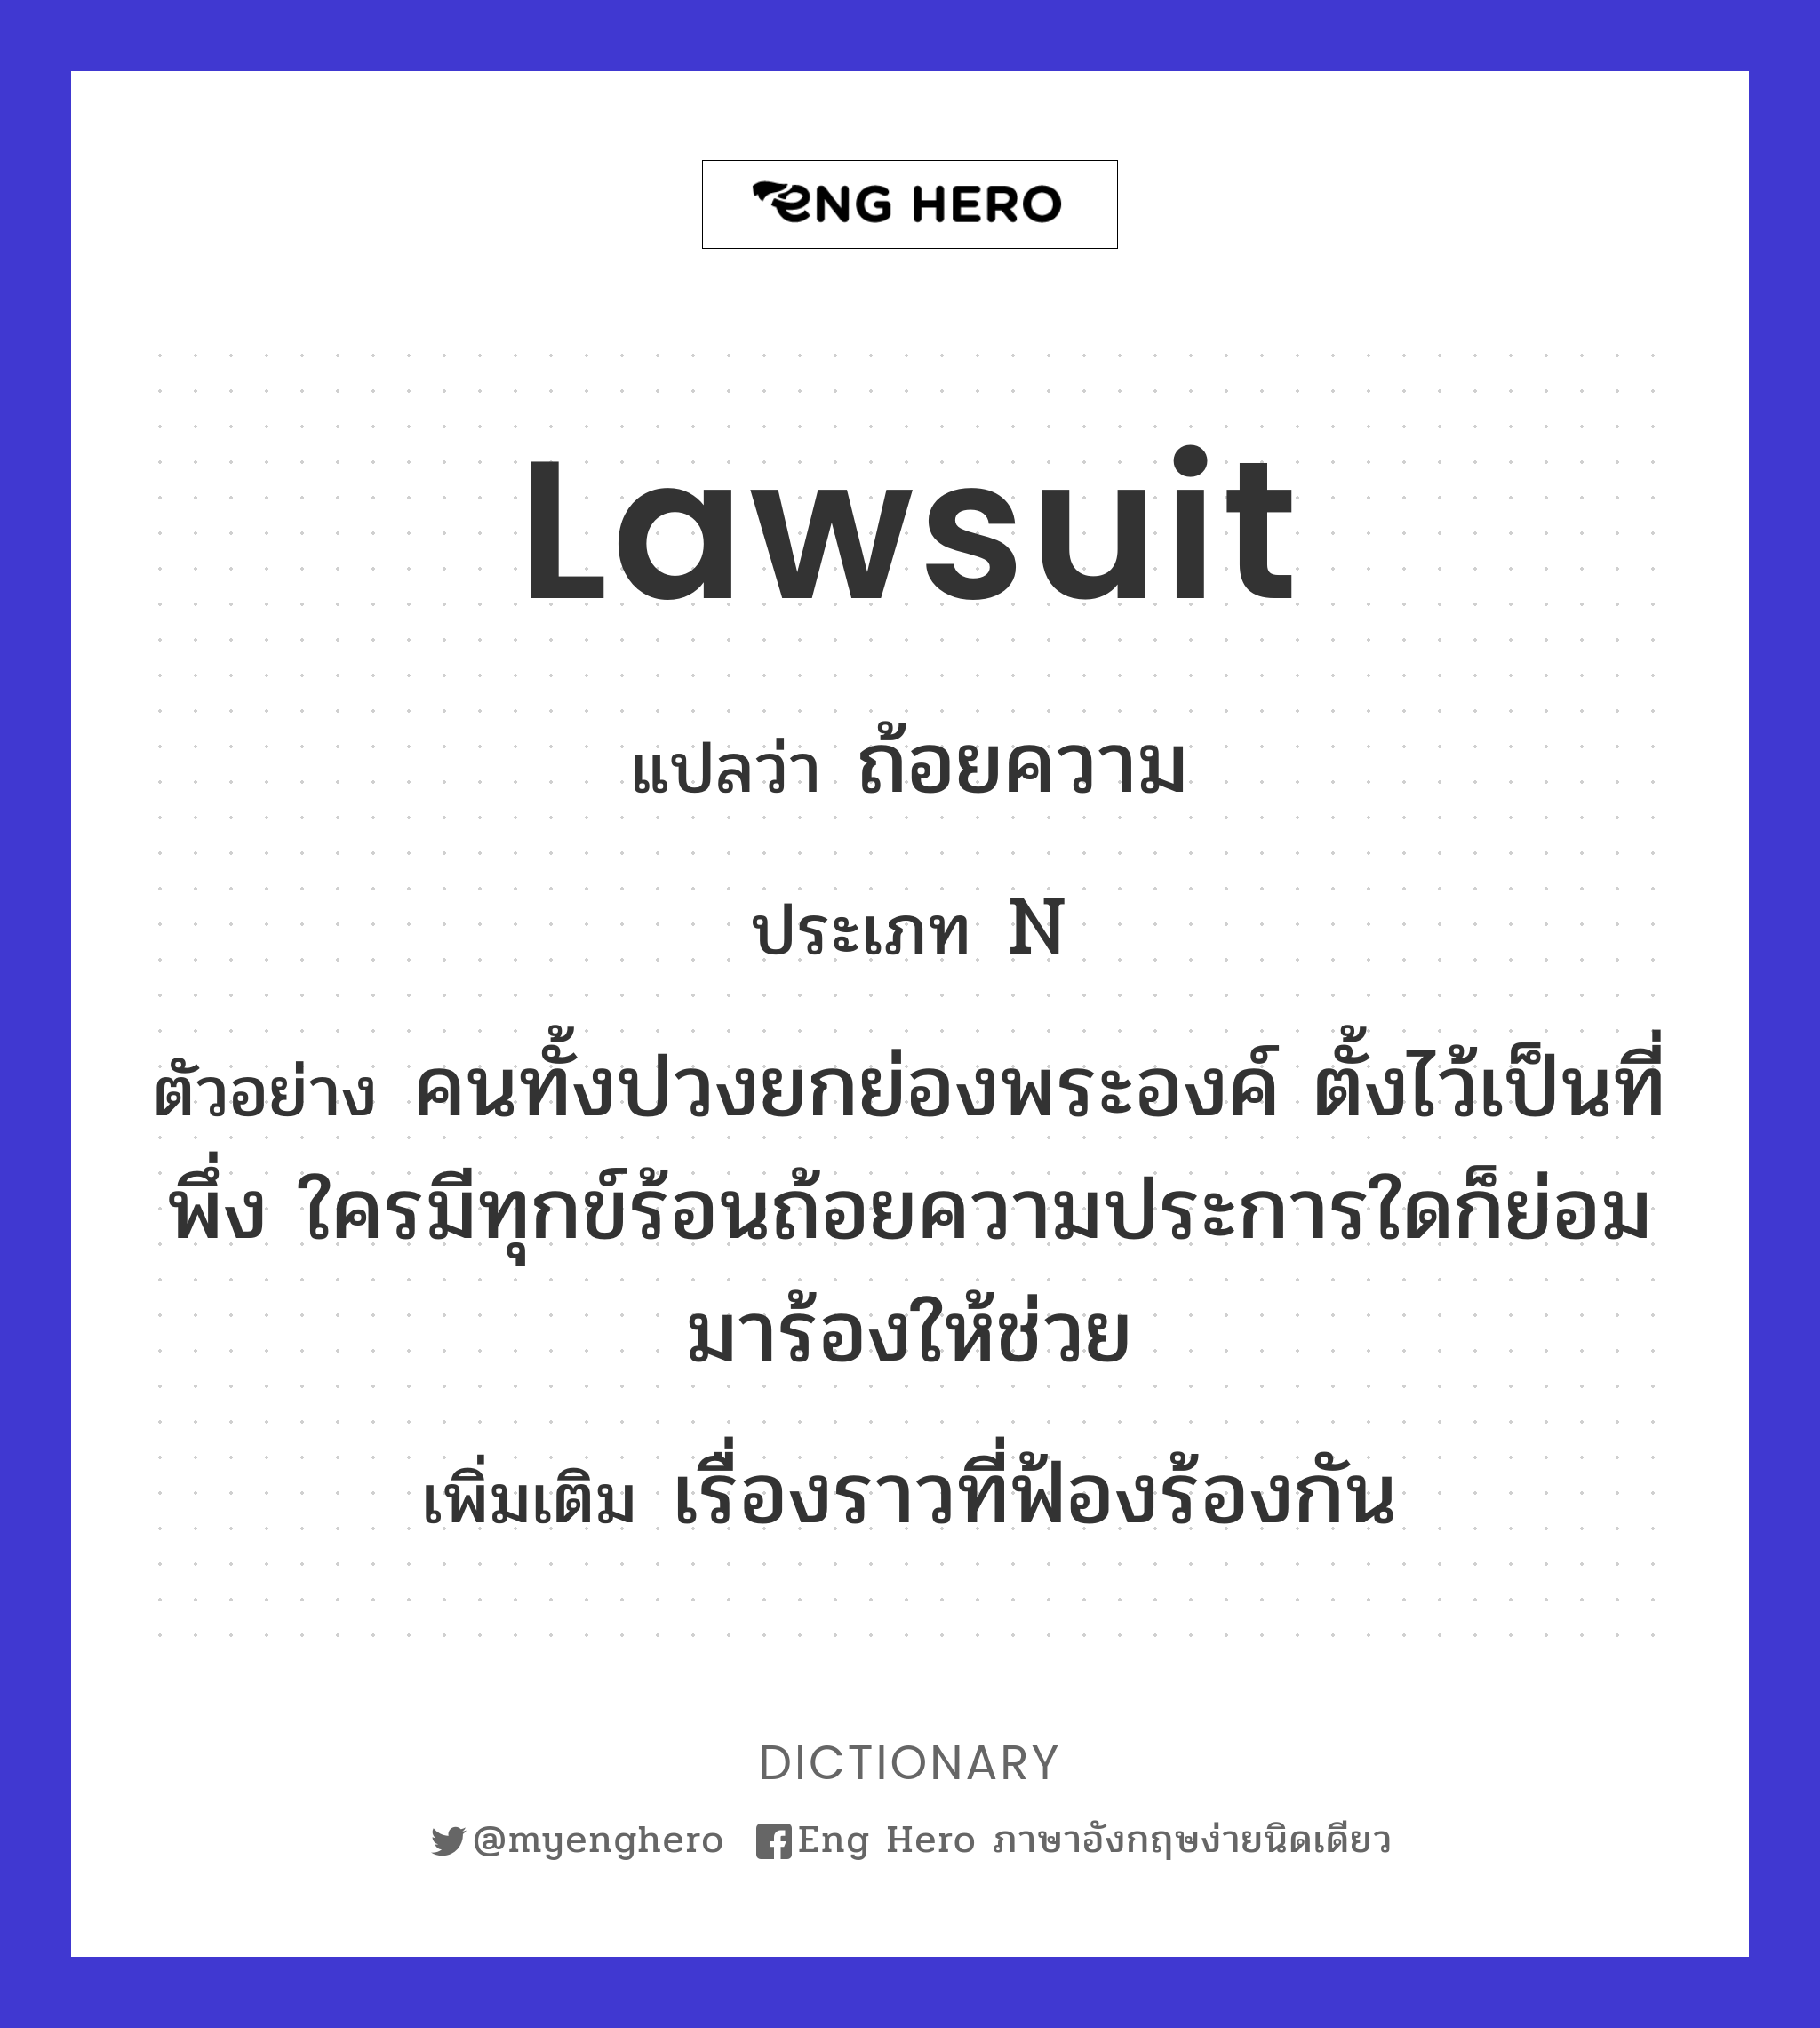 lawsuit